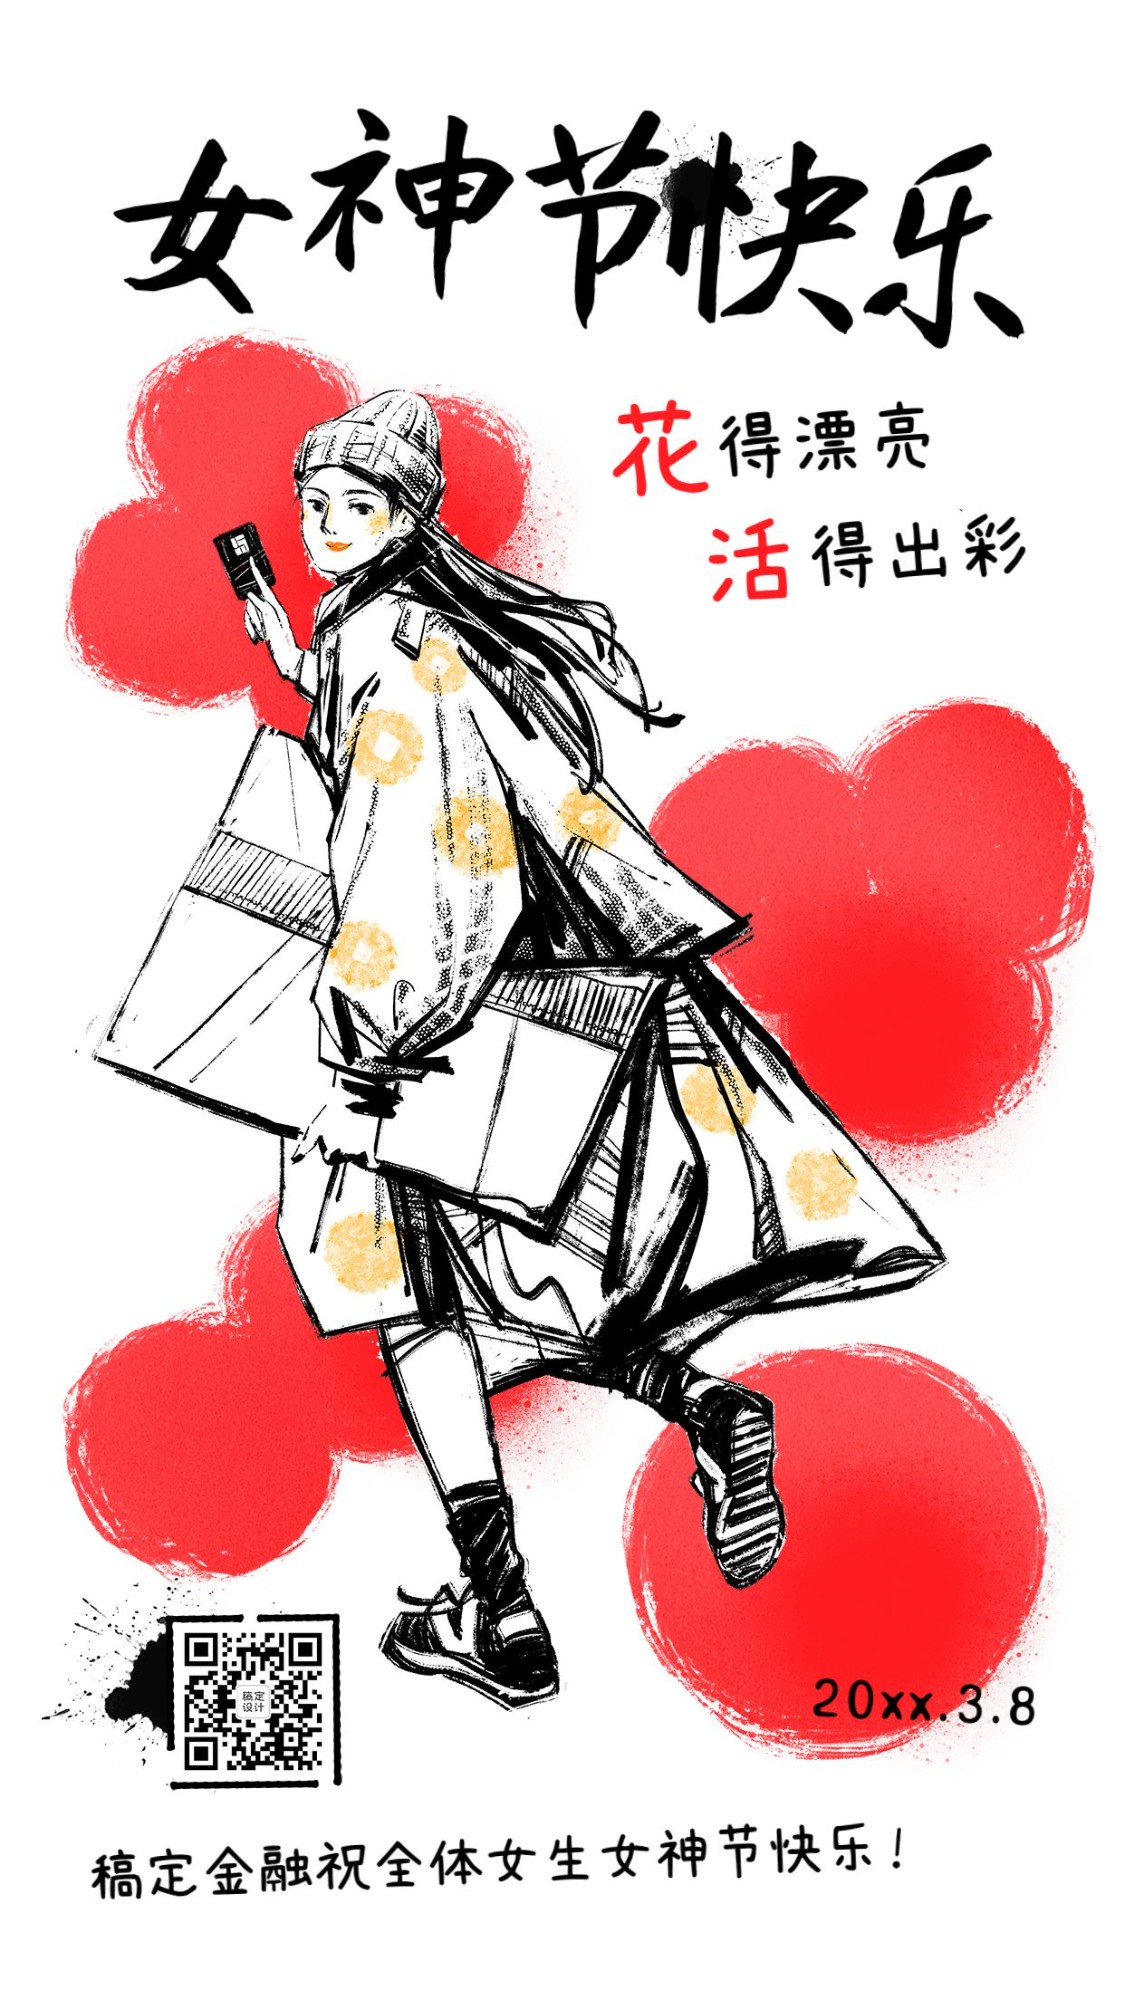 三八妇女节女神节金融保险节日祝福干油墨创意插画海报